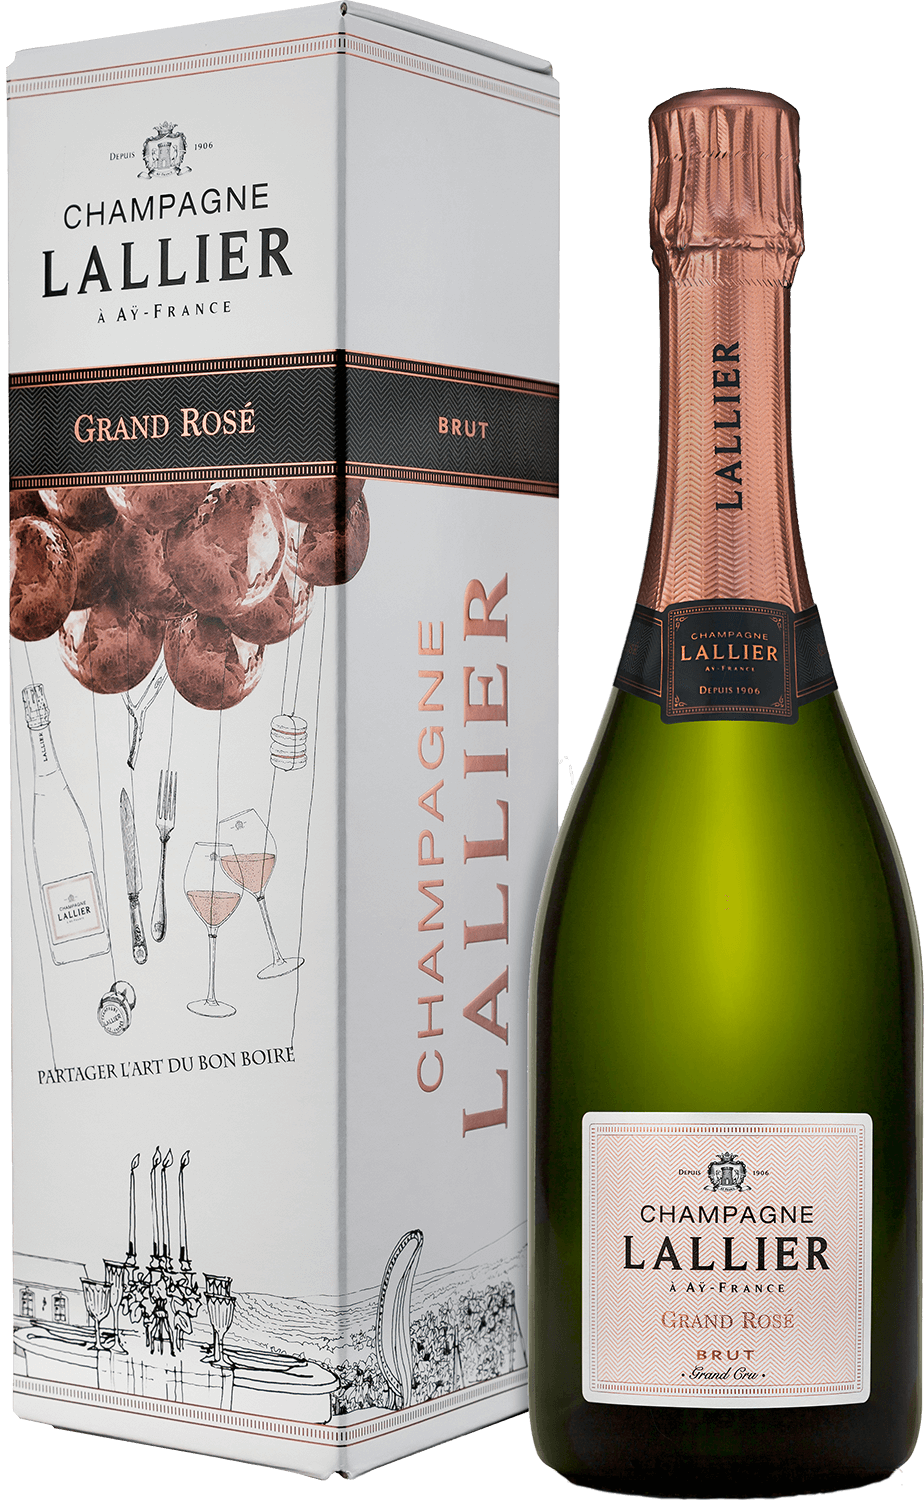 Lallier Grand Rose Brut Grand Cru Champagne AOC (gift box) mailly grand cru brut reserve champagne aoc gift box